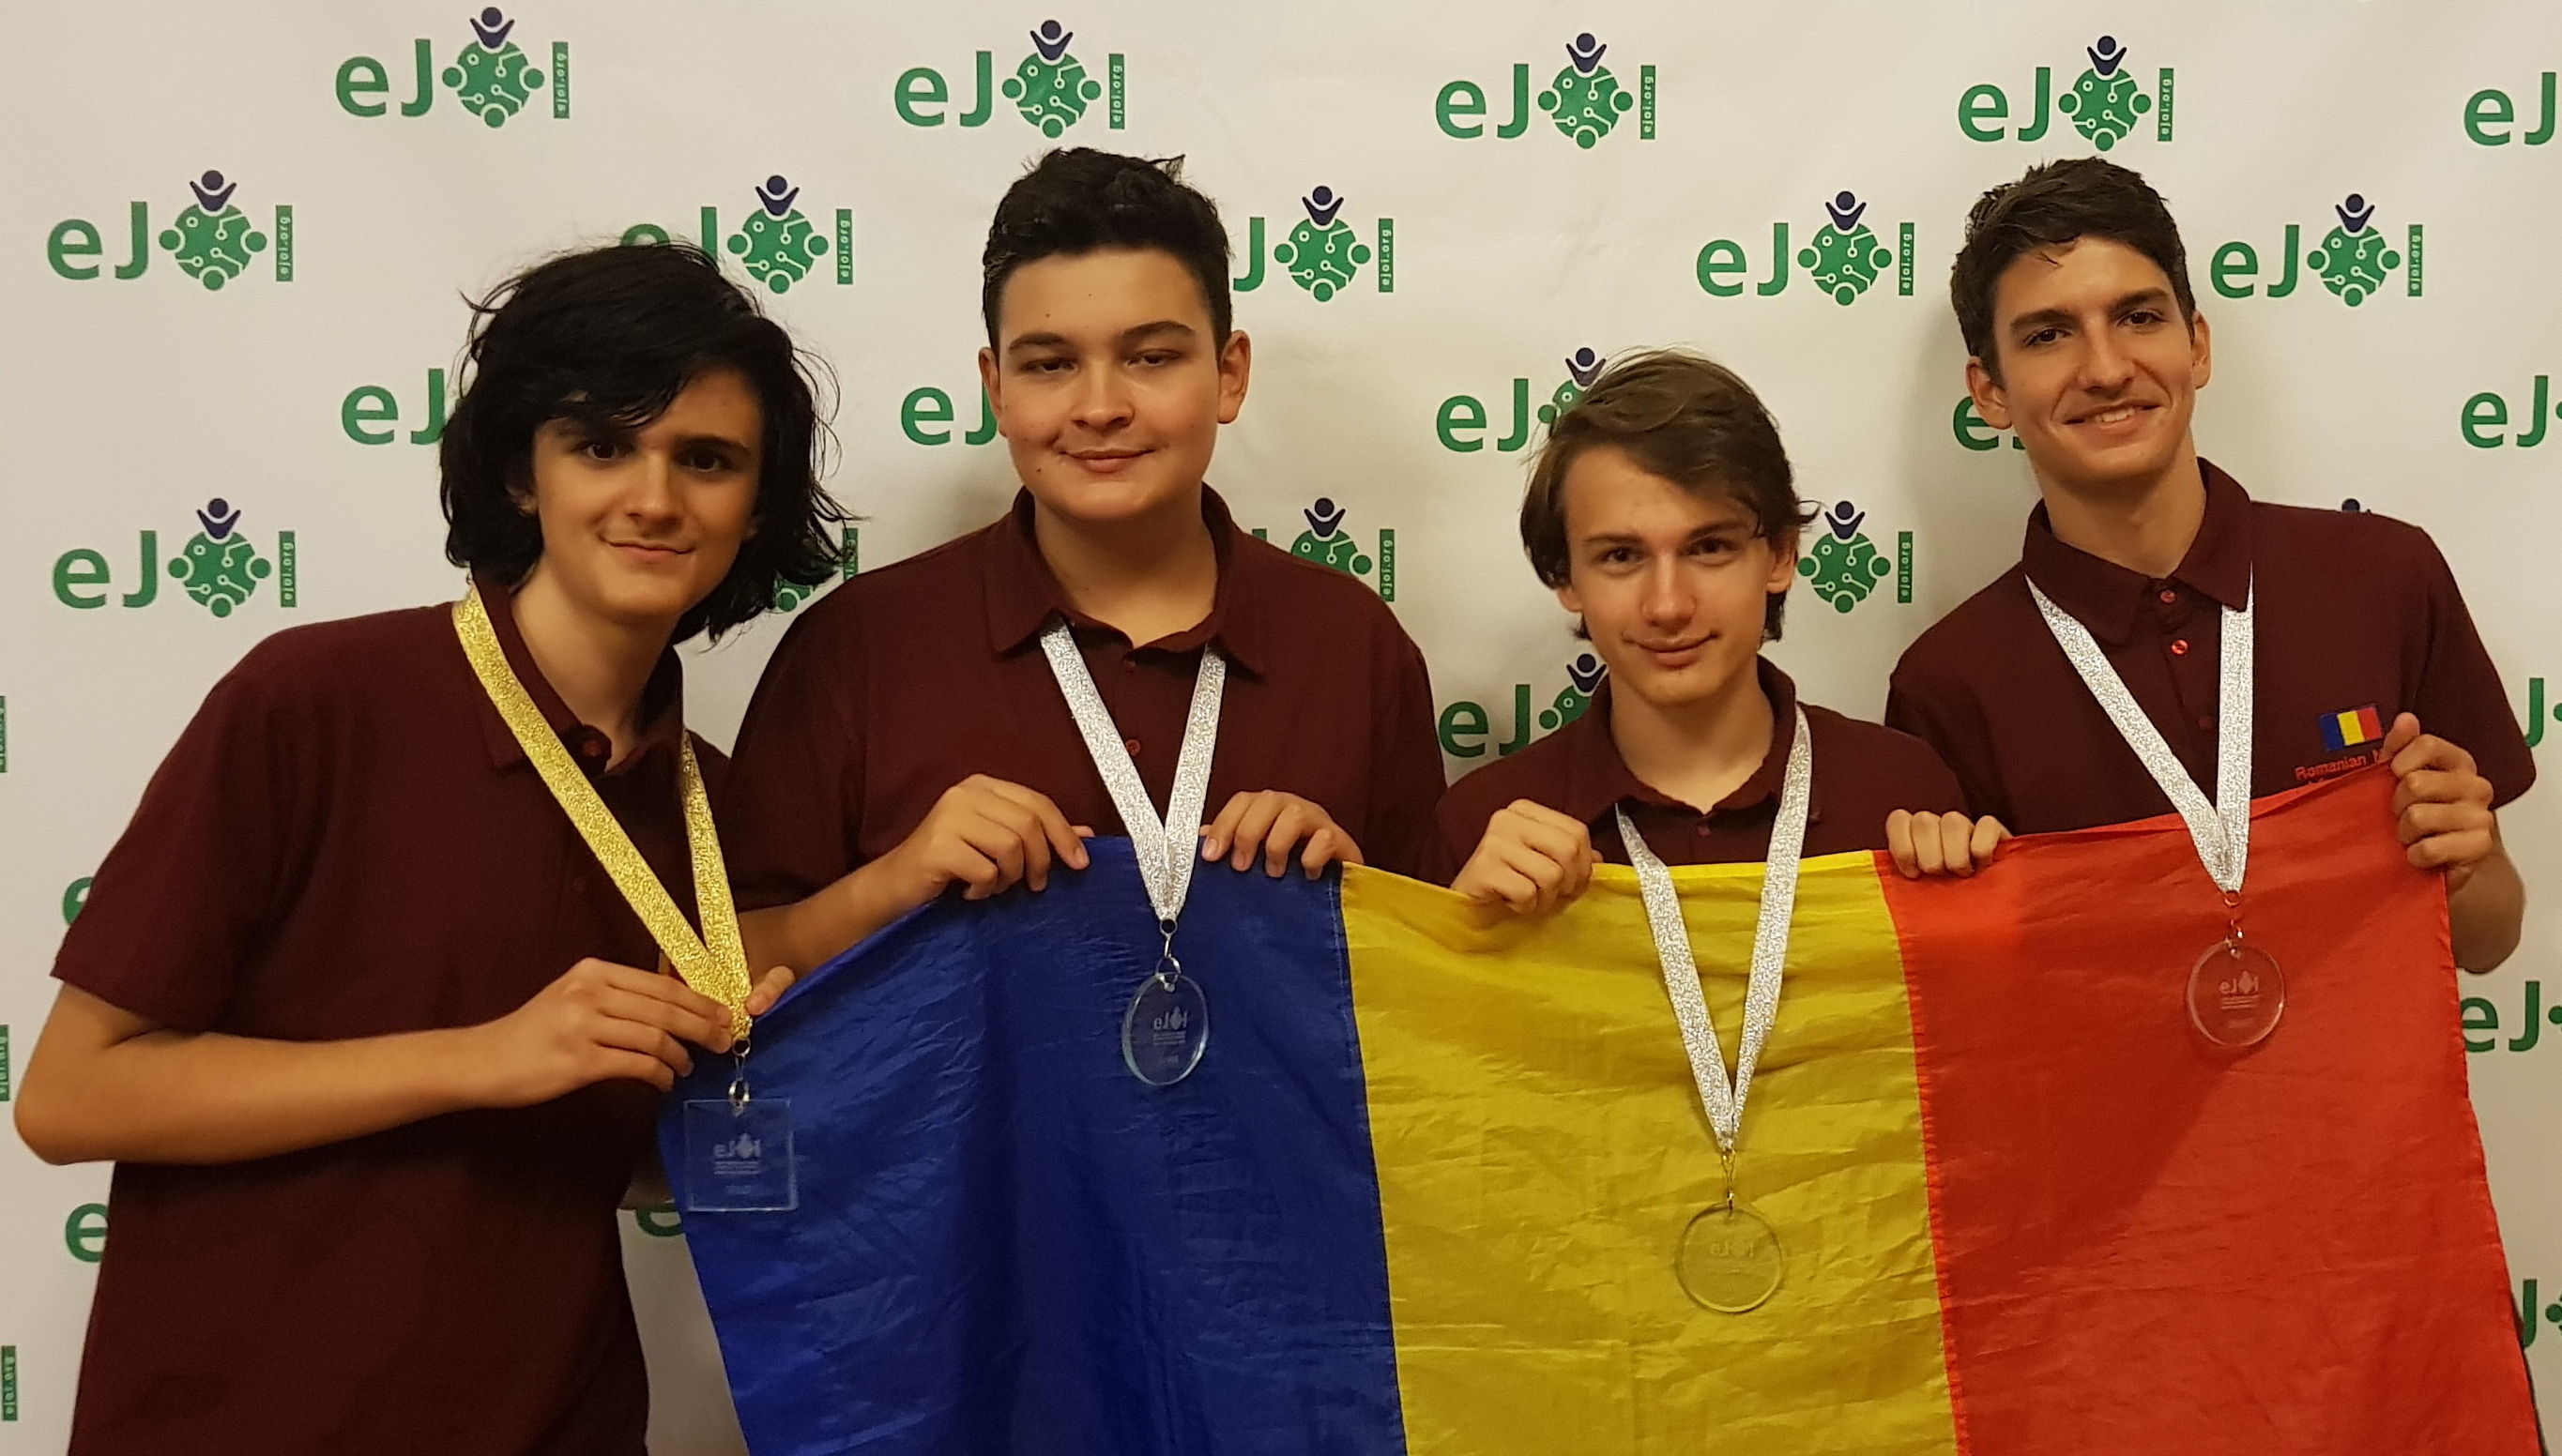 Olimpiada Europeana de Informatica pentru Juniori